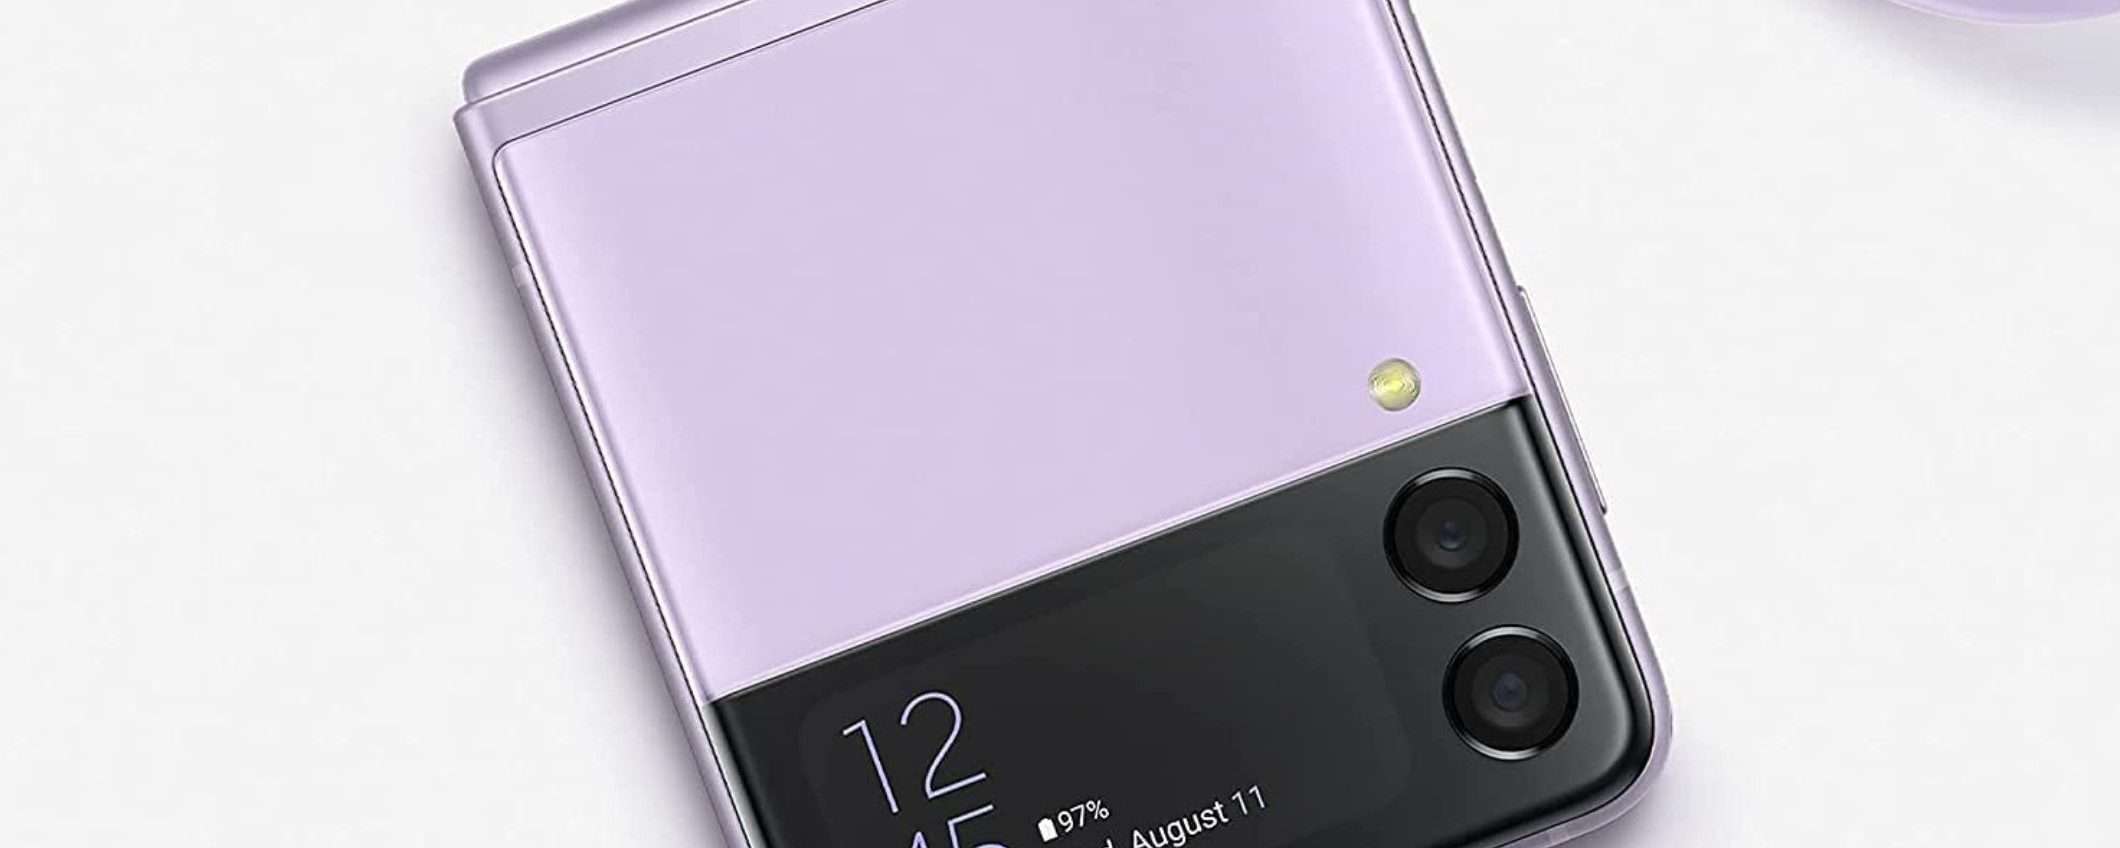 Samsung Galaxy Z Flip 4, spunta una nuova colorazione brillante